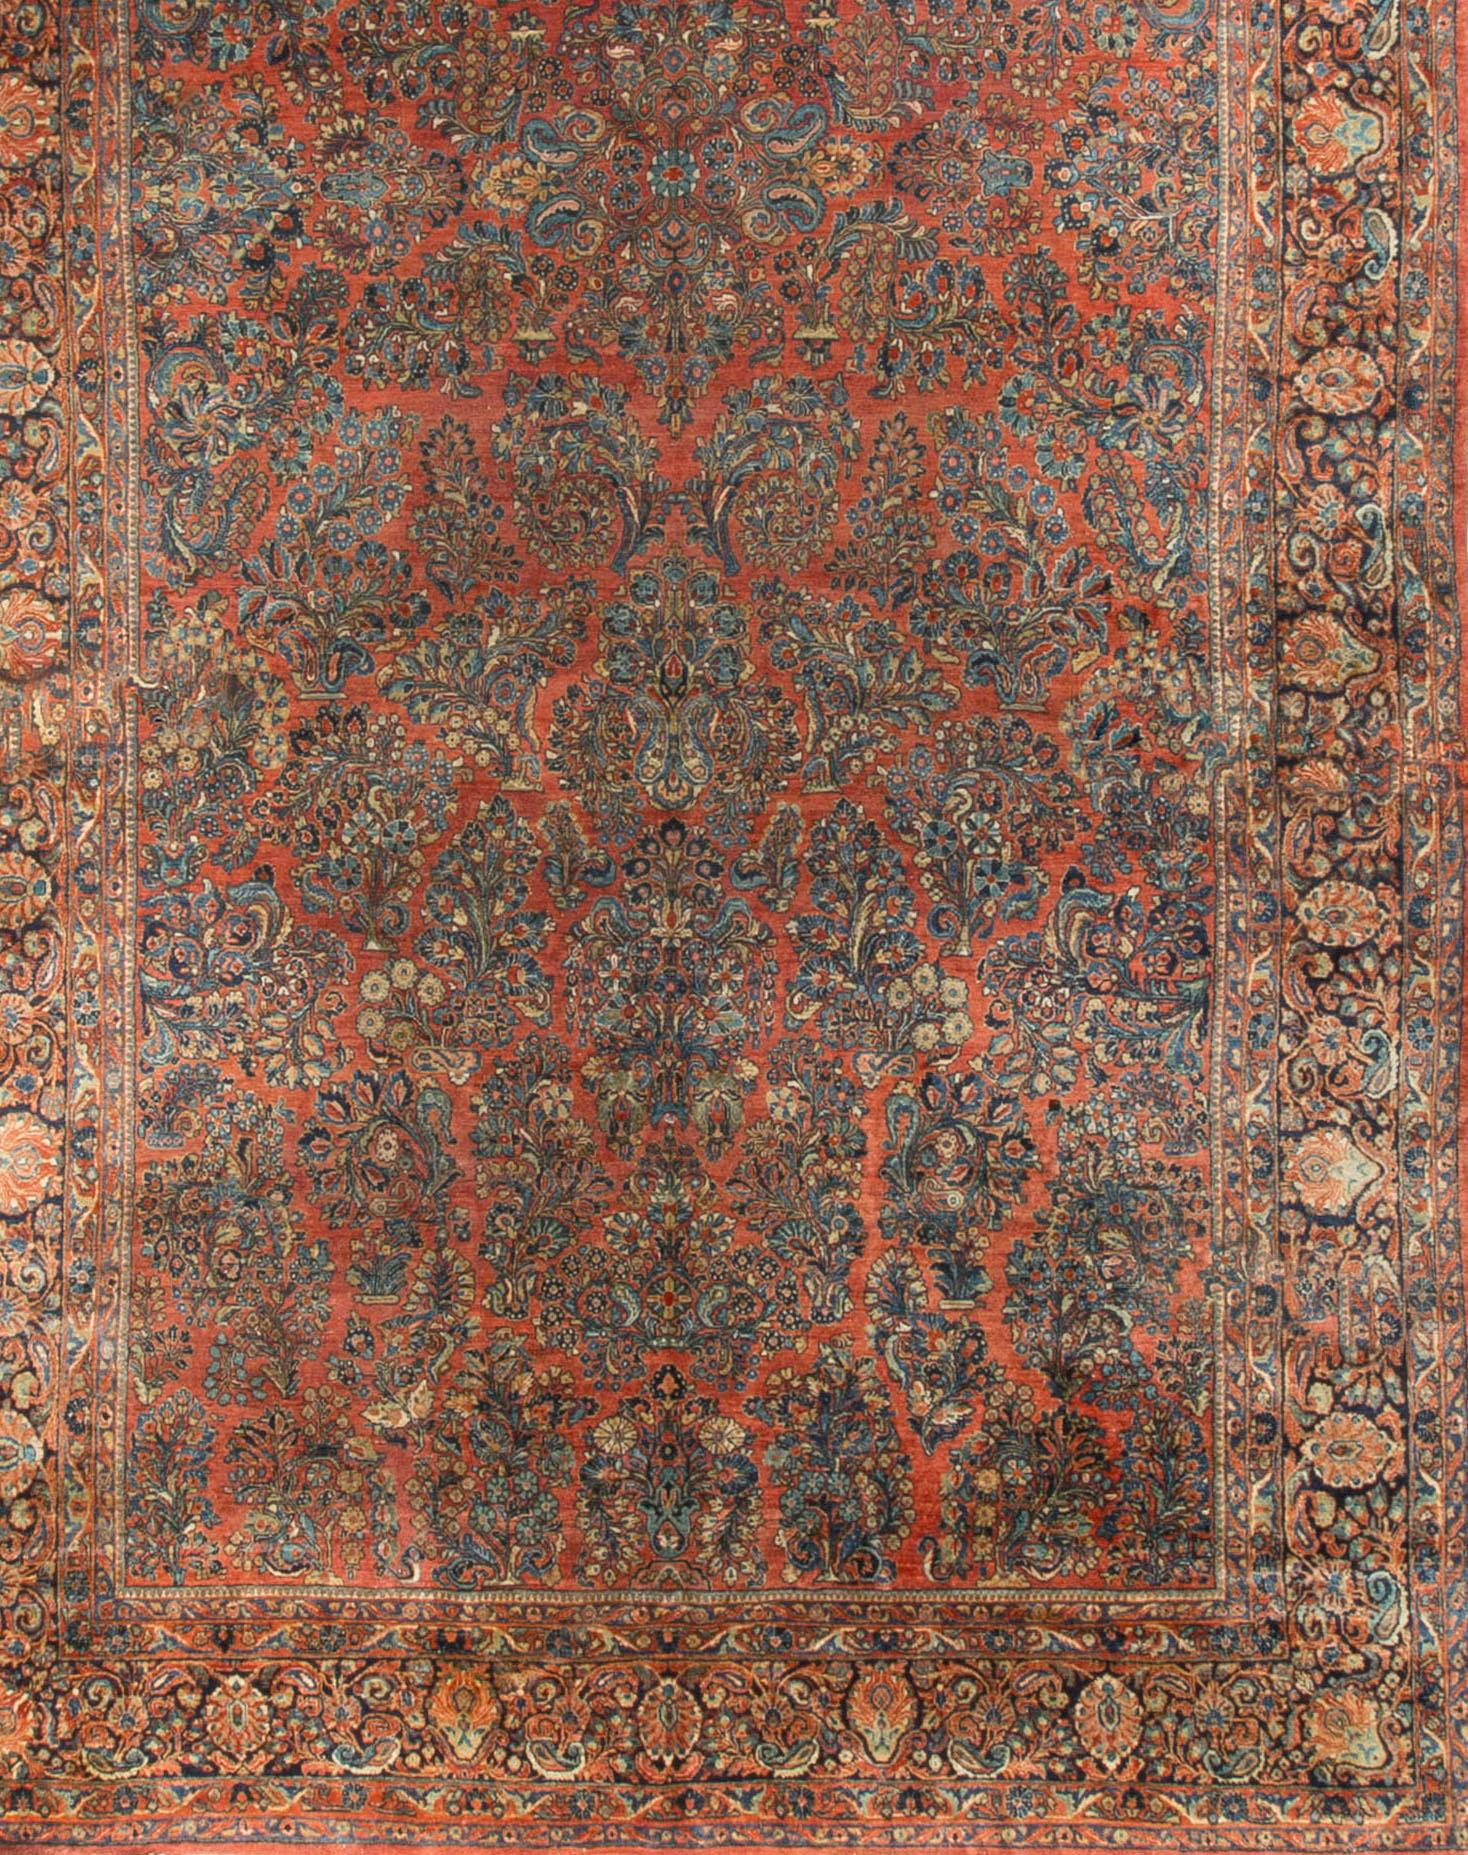 Ein antiker Sarouk-Teppich auf blauem Grund mit einer roten, verschlungenen Ranke mit Blattmotiven, die von einer marineblauen Bordüre umgeben ist, die das Thema wiederholt. Größe: 10' x 21'6.
 